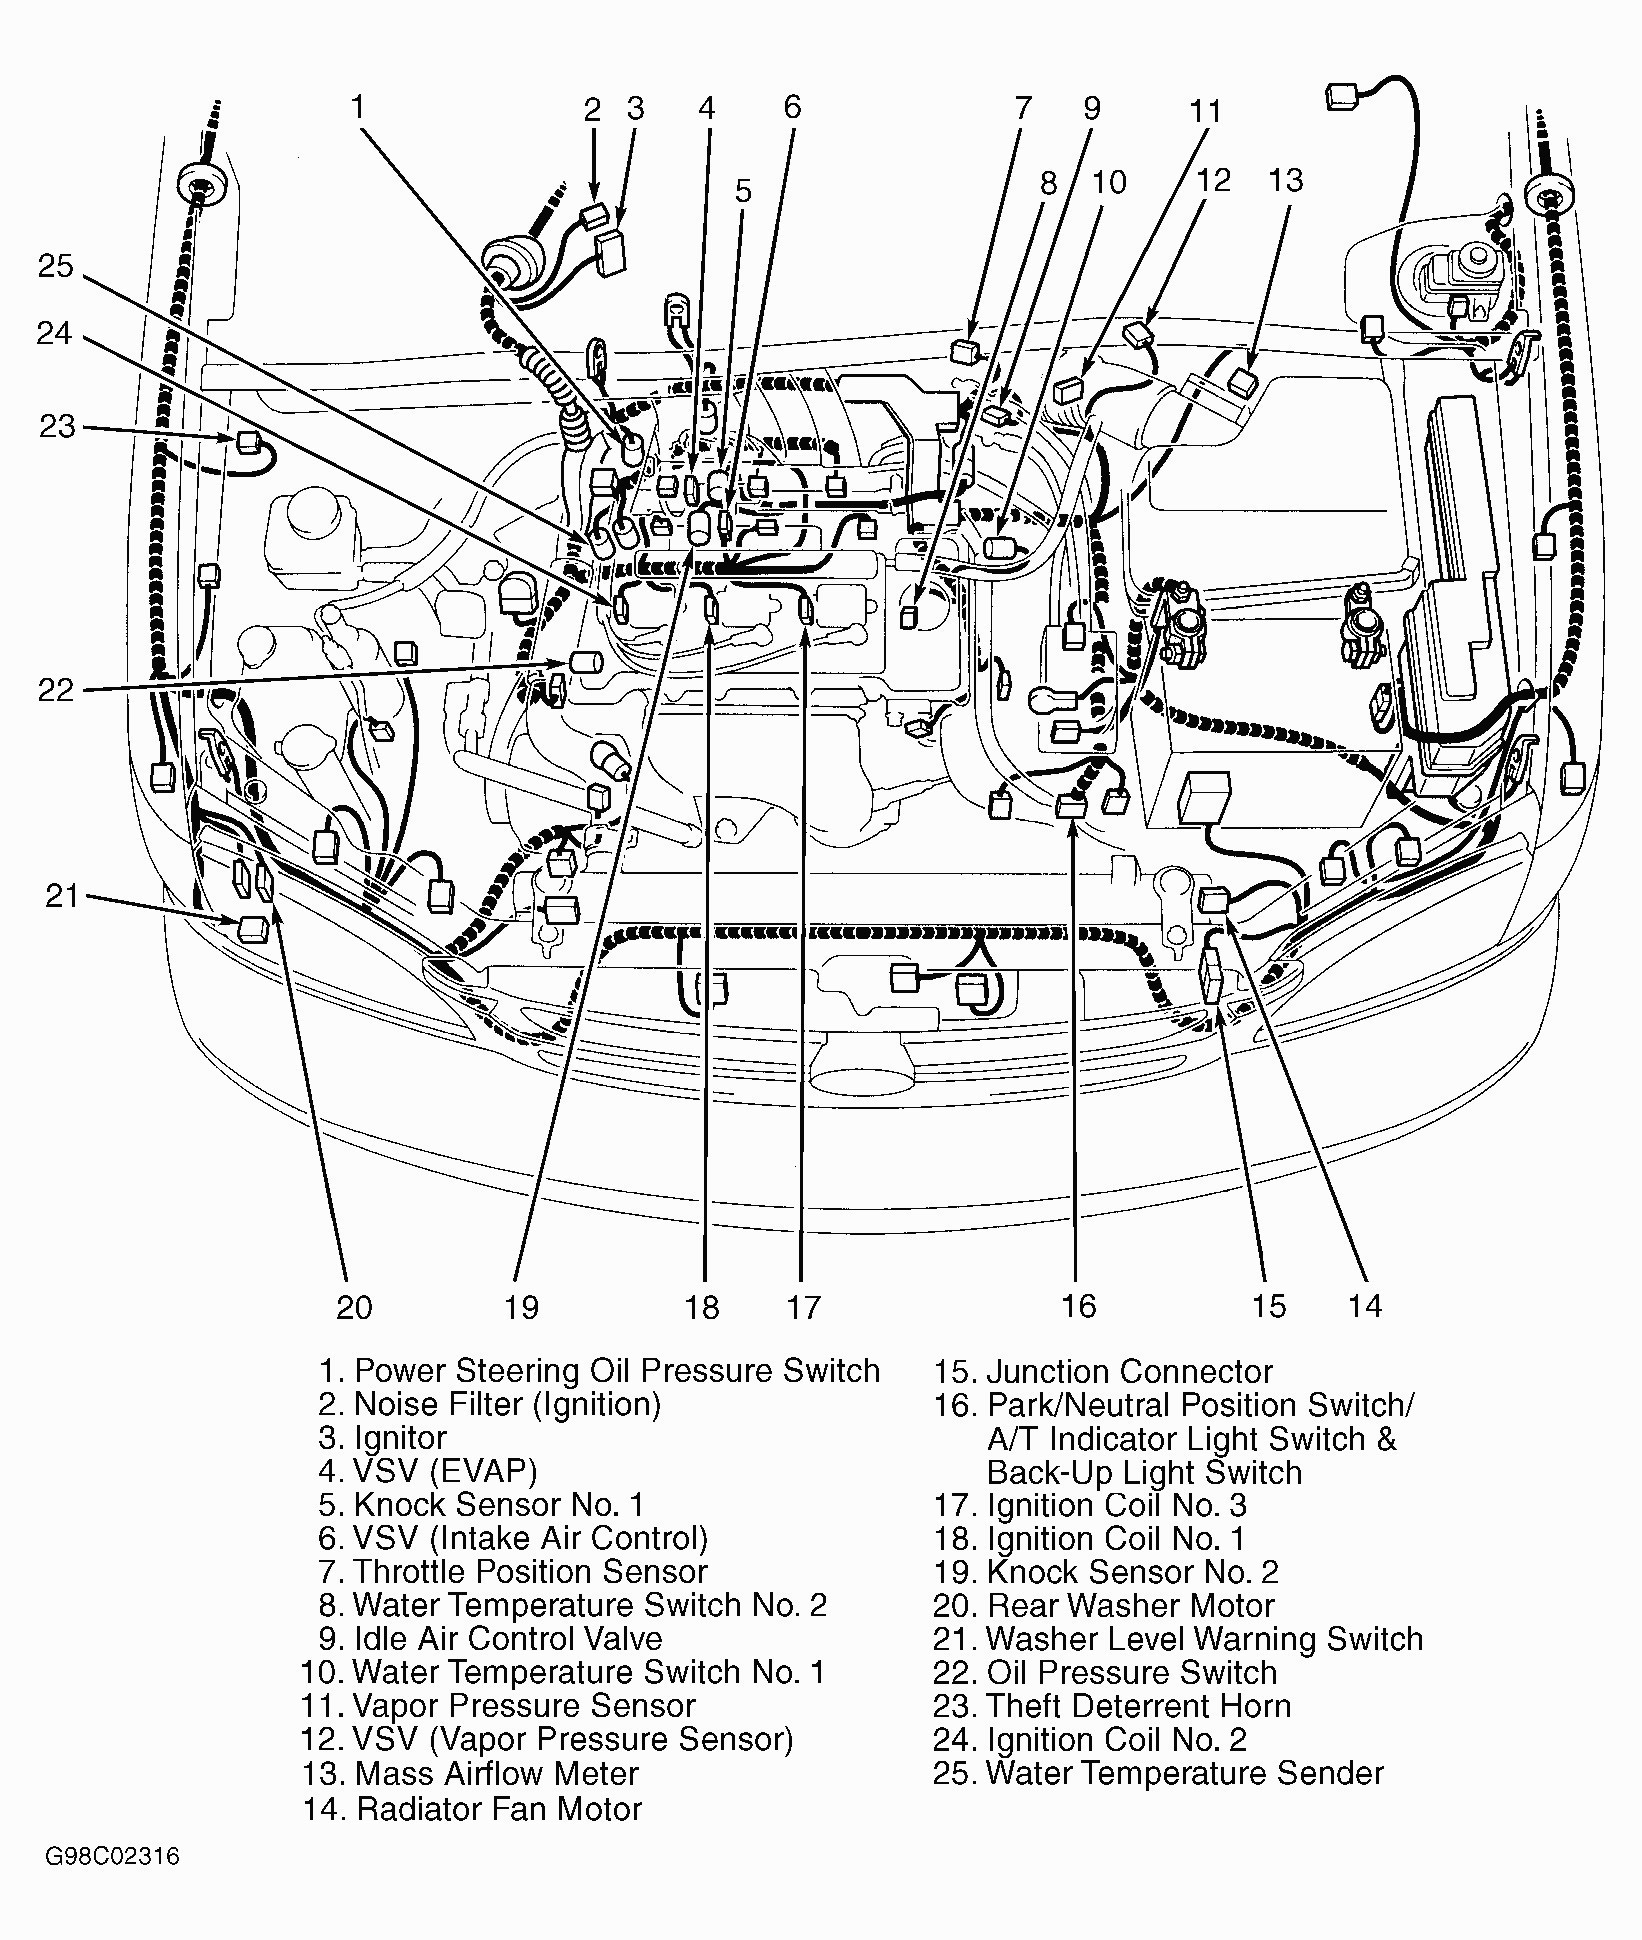 Toyota 4runner Engine Diagram toyota Engine Schematics Wiring Diagram Paper Of Toyota 4runner Engine Diagram